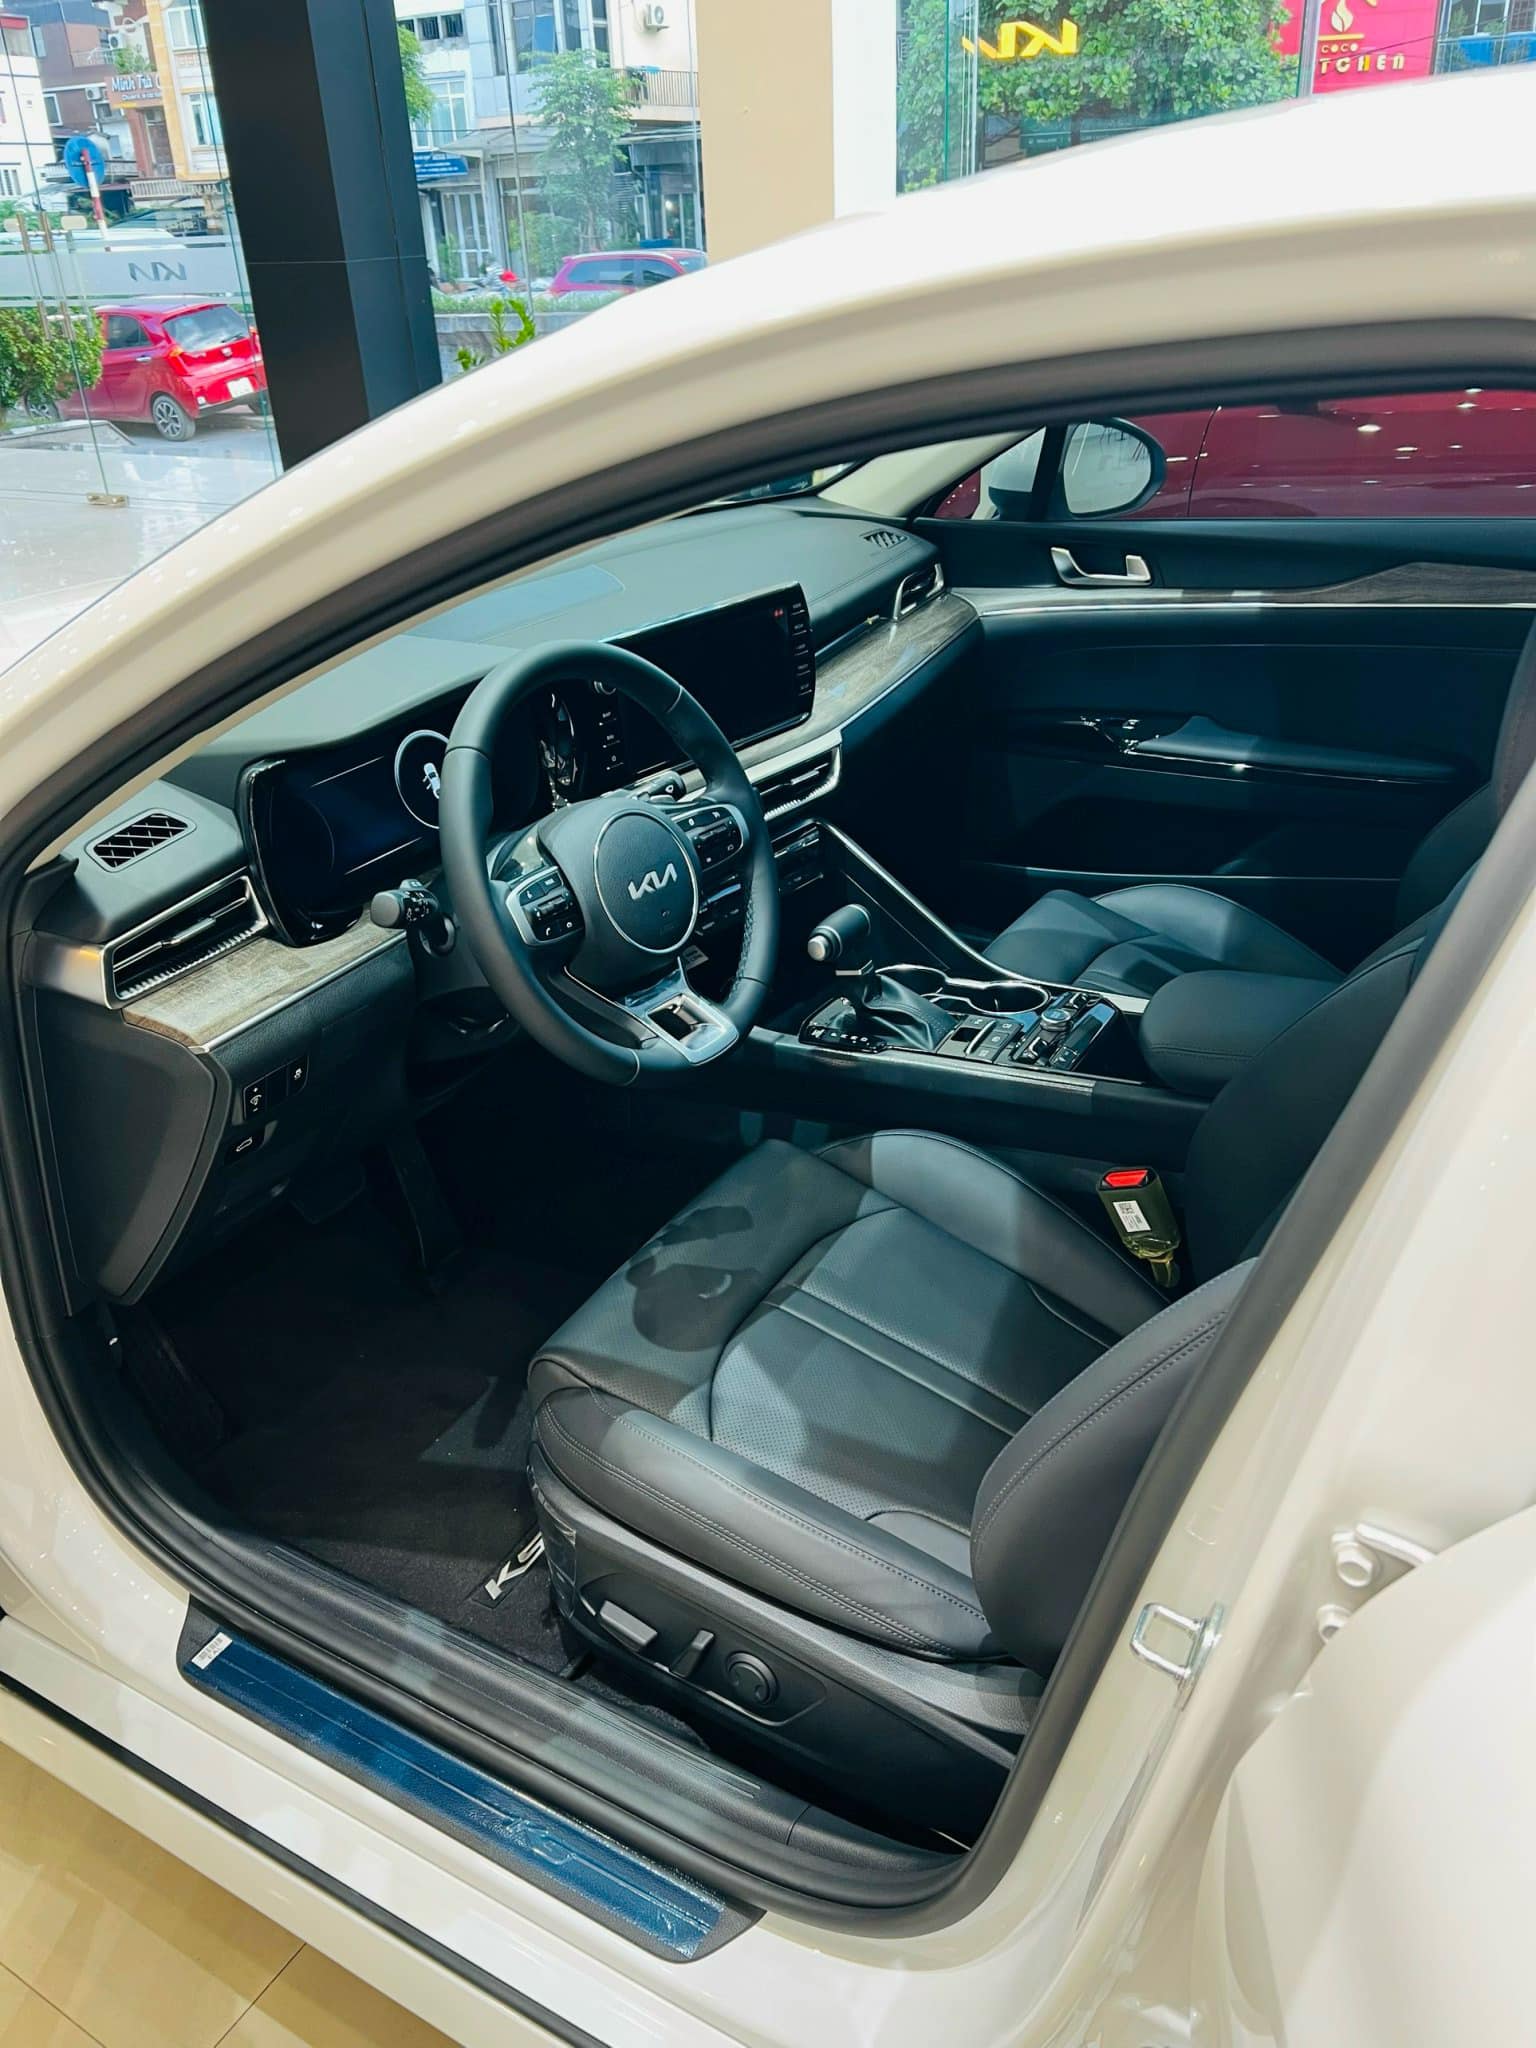 Giá Kia K5 chạm đáy mới: Giảm kỷ lục 139 triệu đồng, rẻ hơn cả Corolla Altis bản tiêu chuẩn - Ảnh 3.